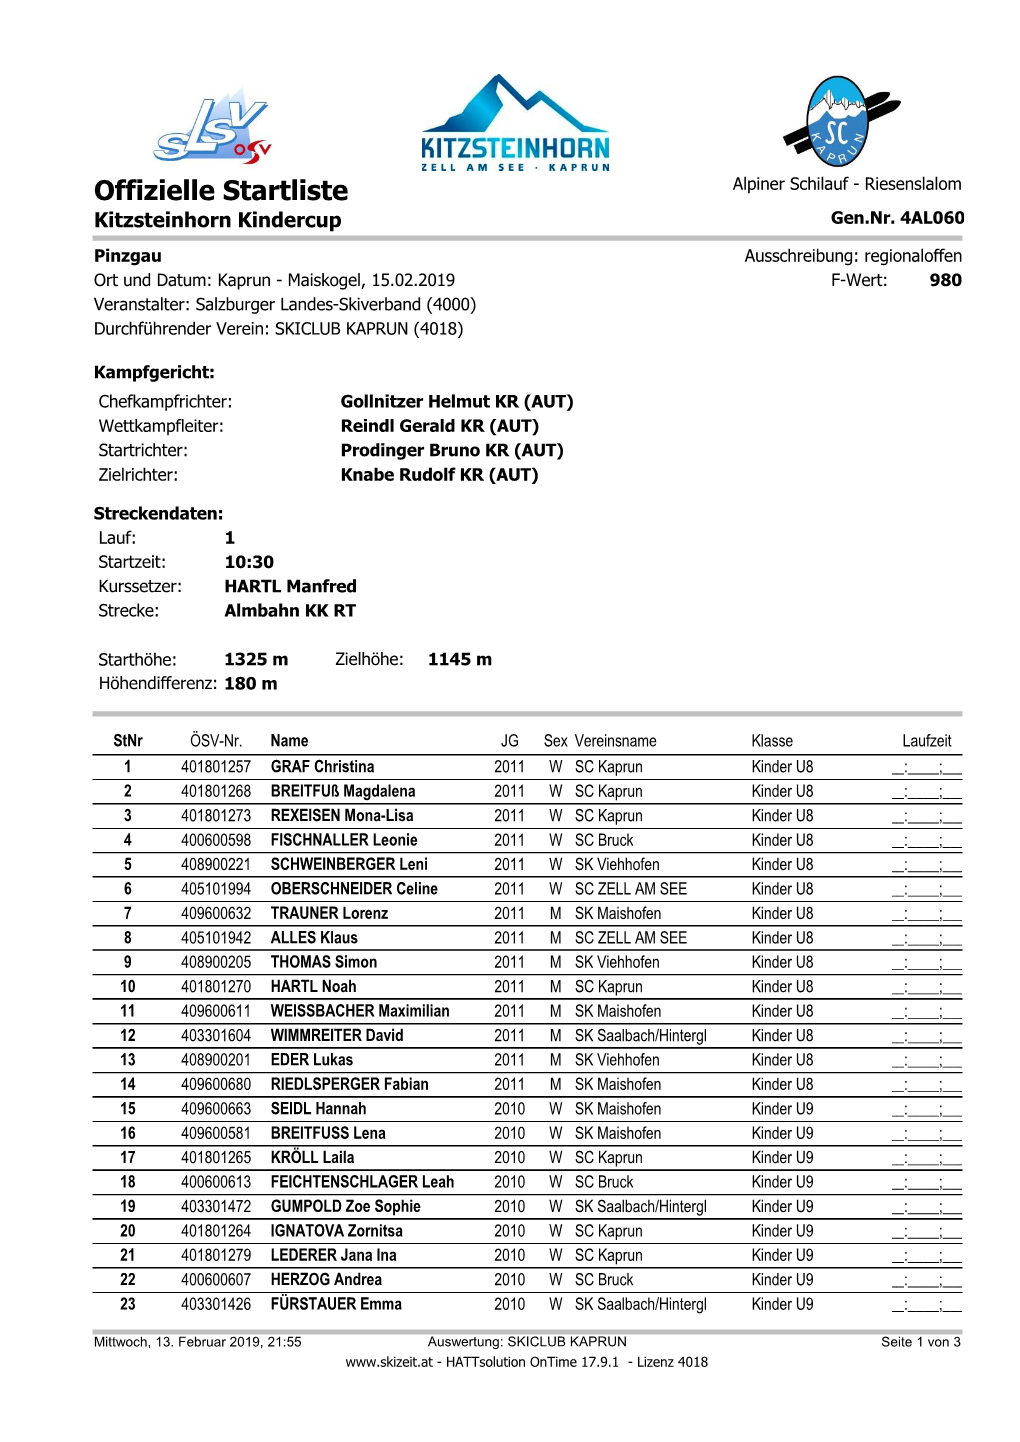 Offizielle Startliste Alpiner Schilauf - Riesenslalom Kitzsteinhorn Kindercup Gen.Nr